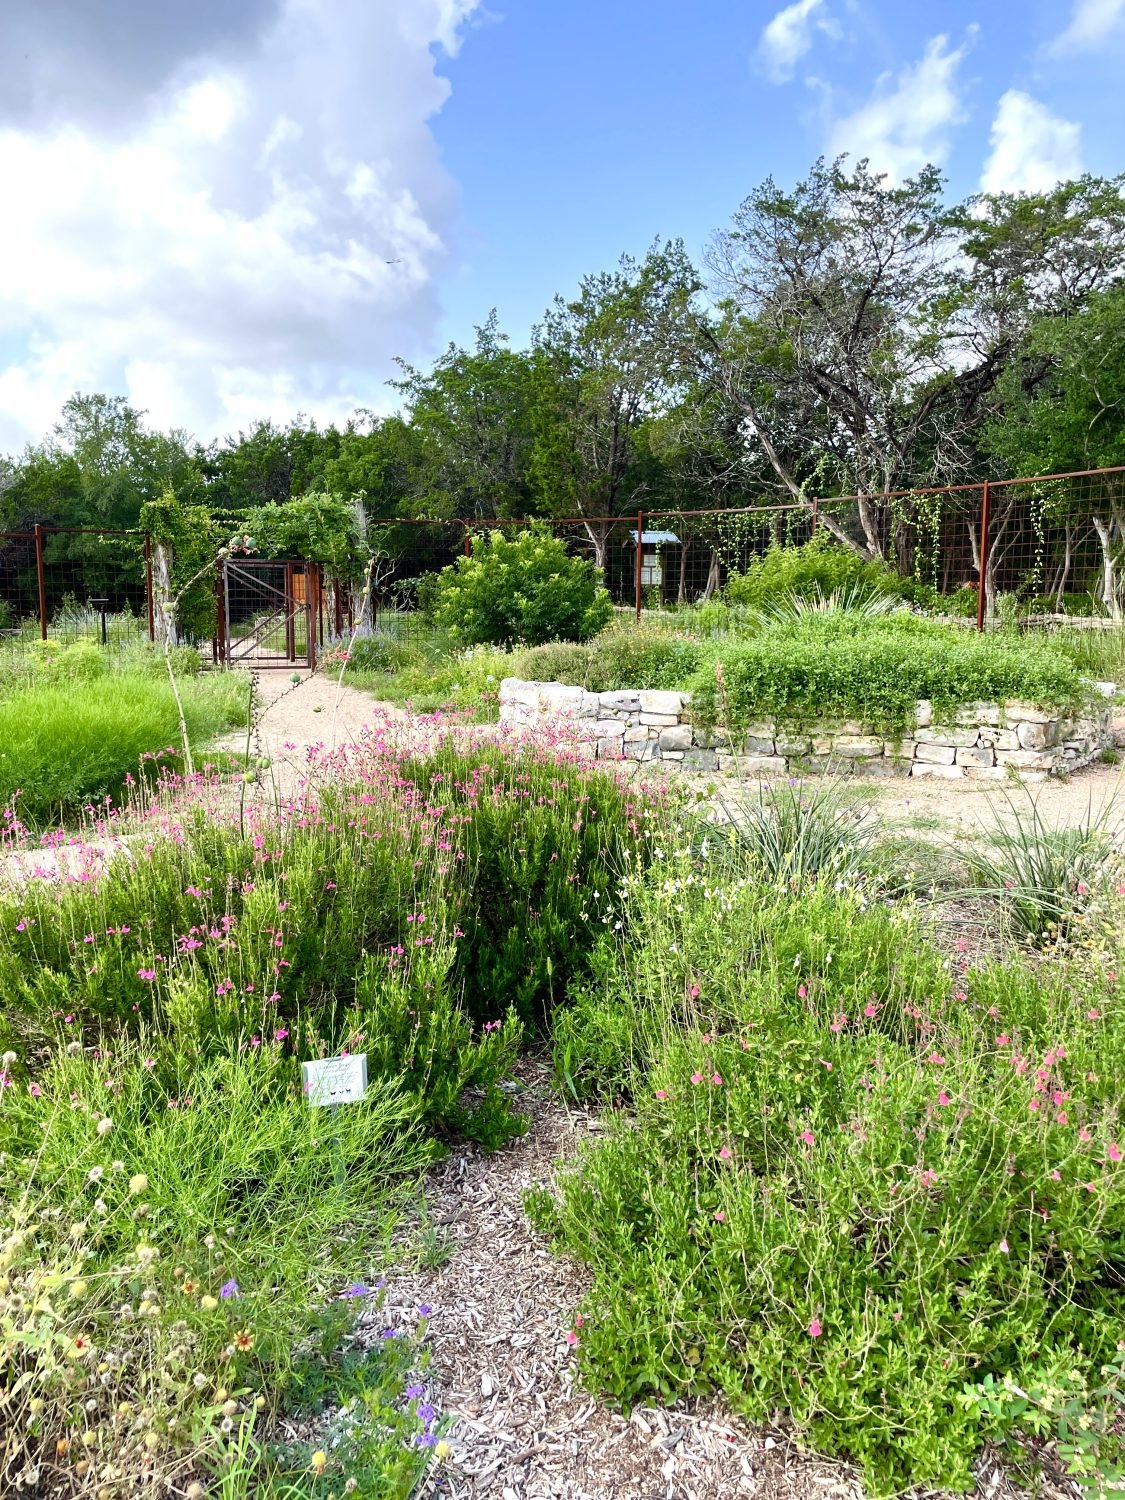 Wildscape demonstration garden